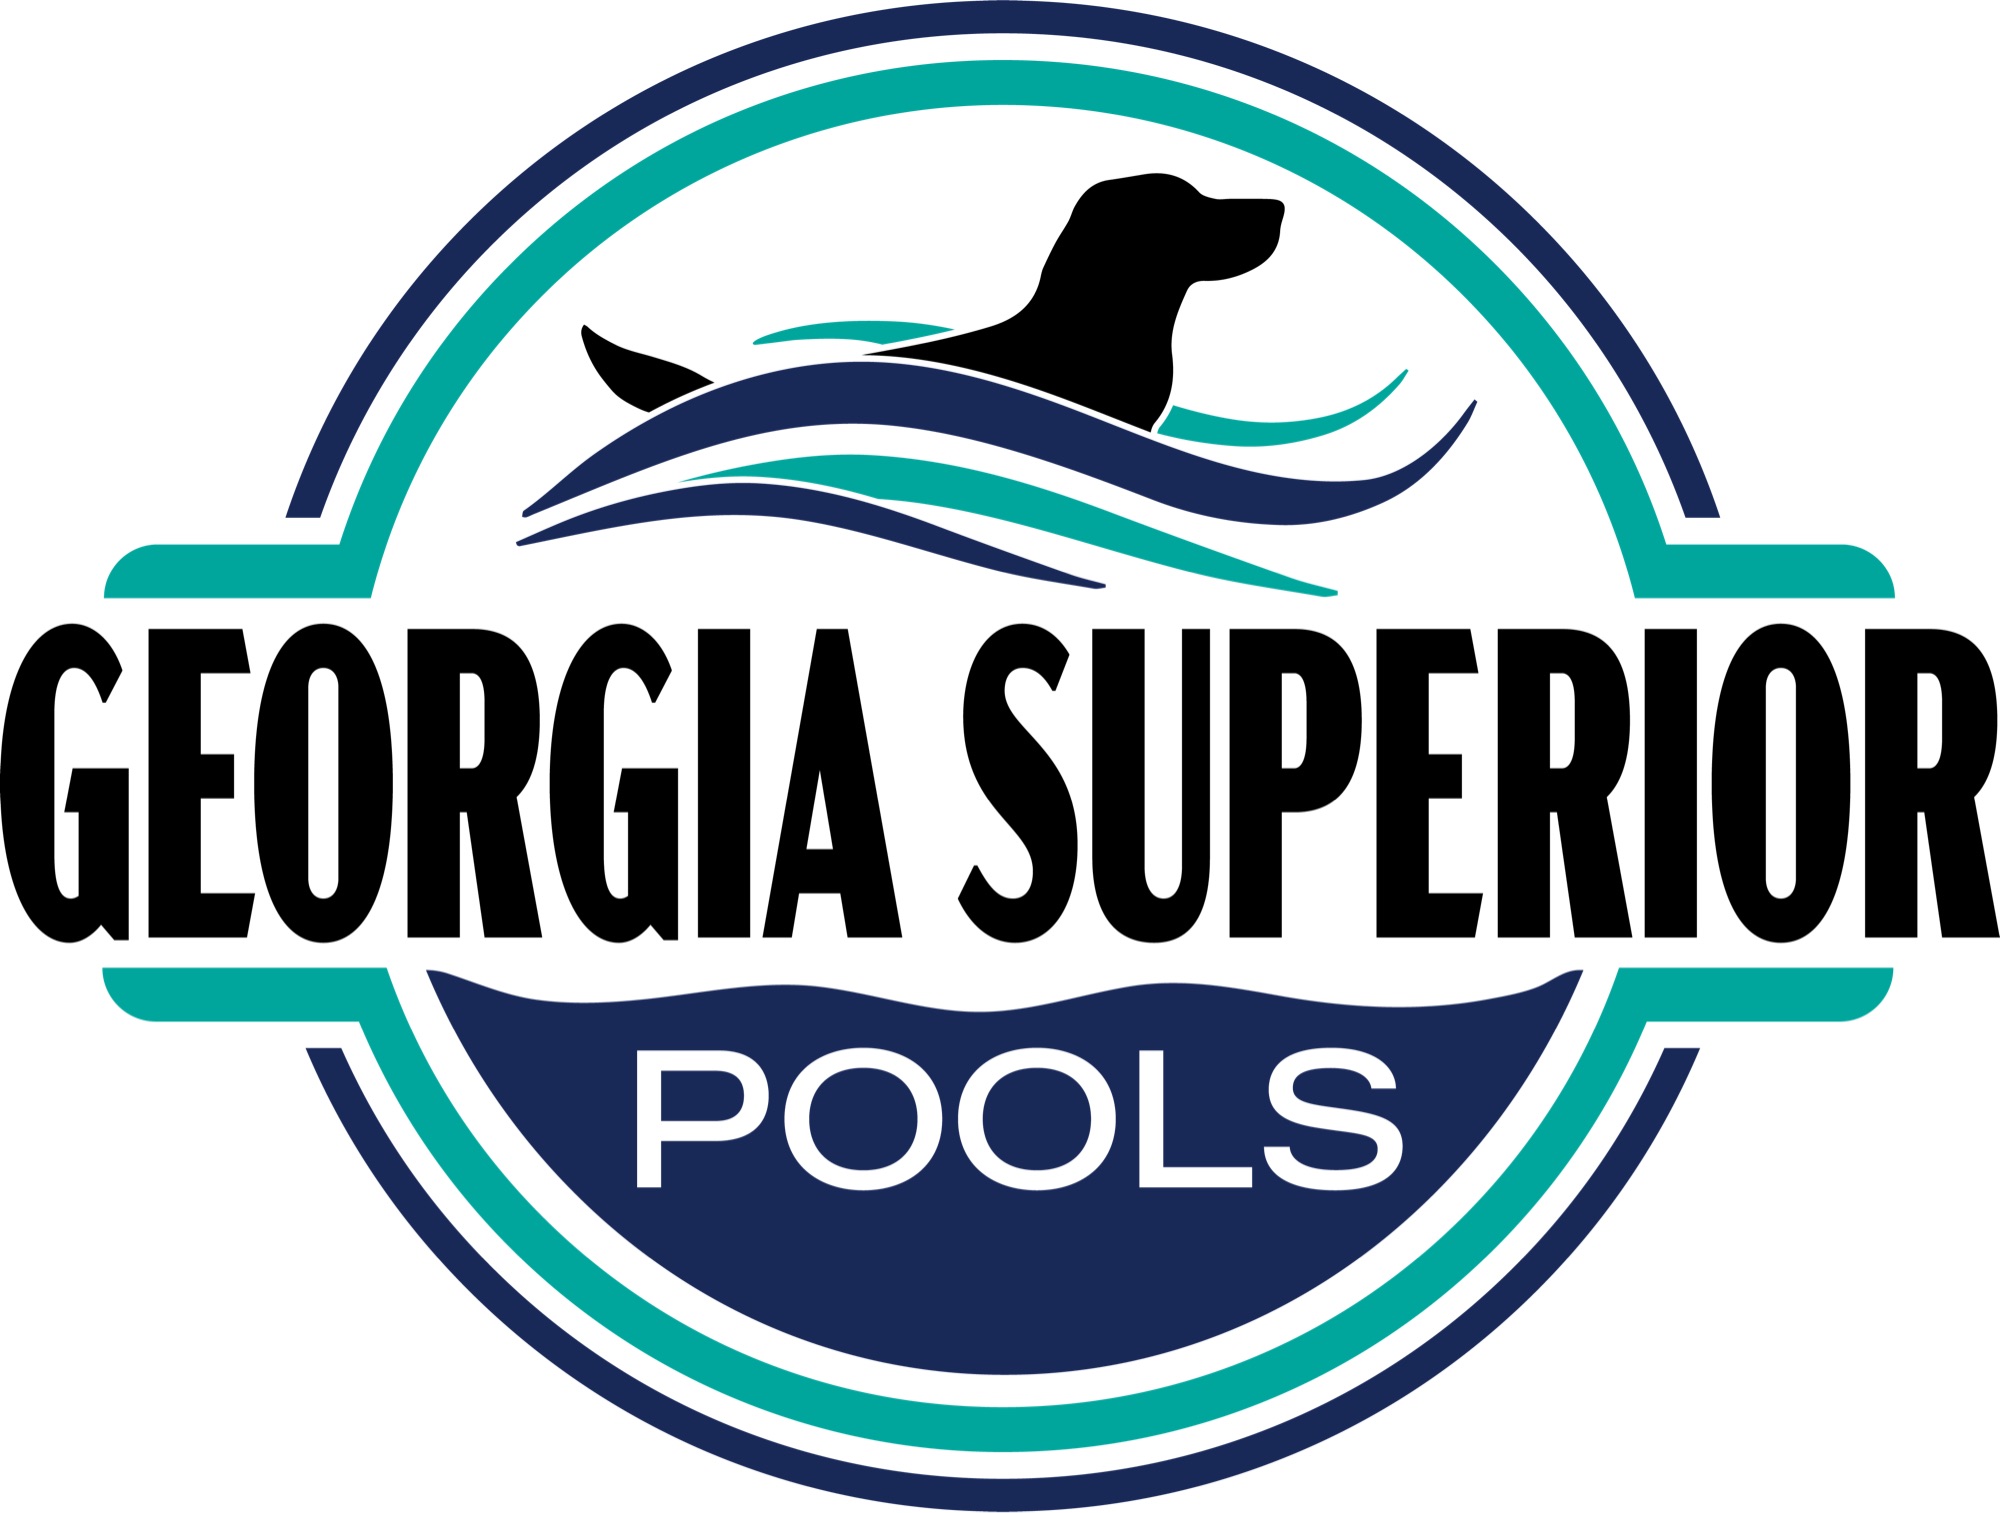 Georgia Superior Pools Logo